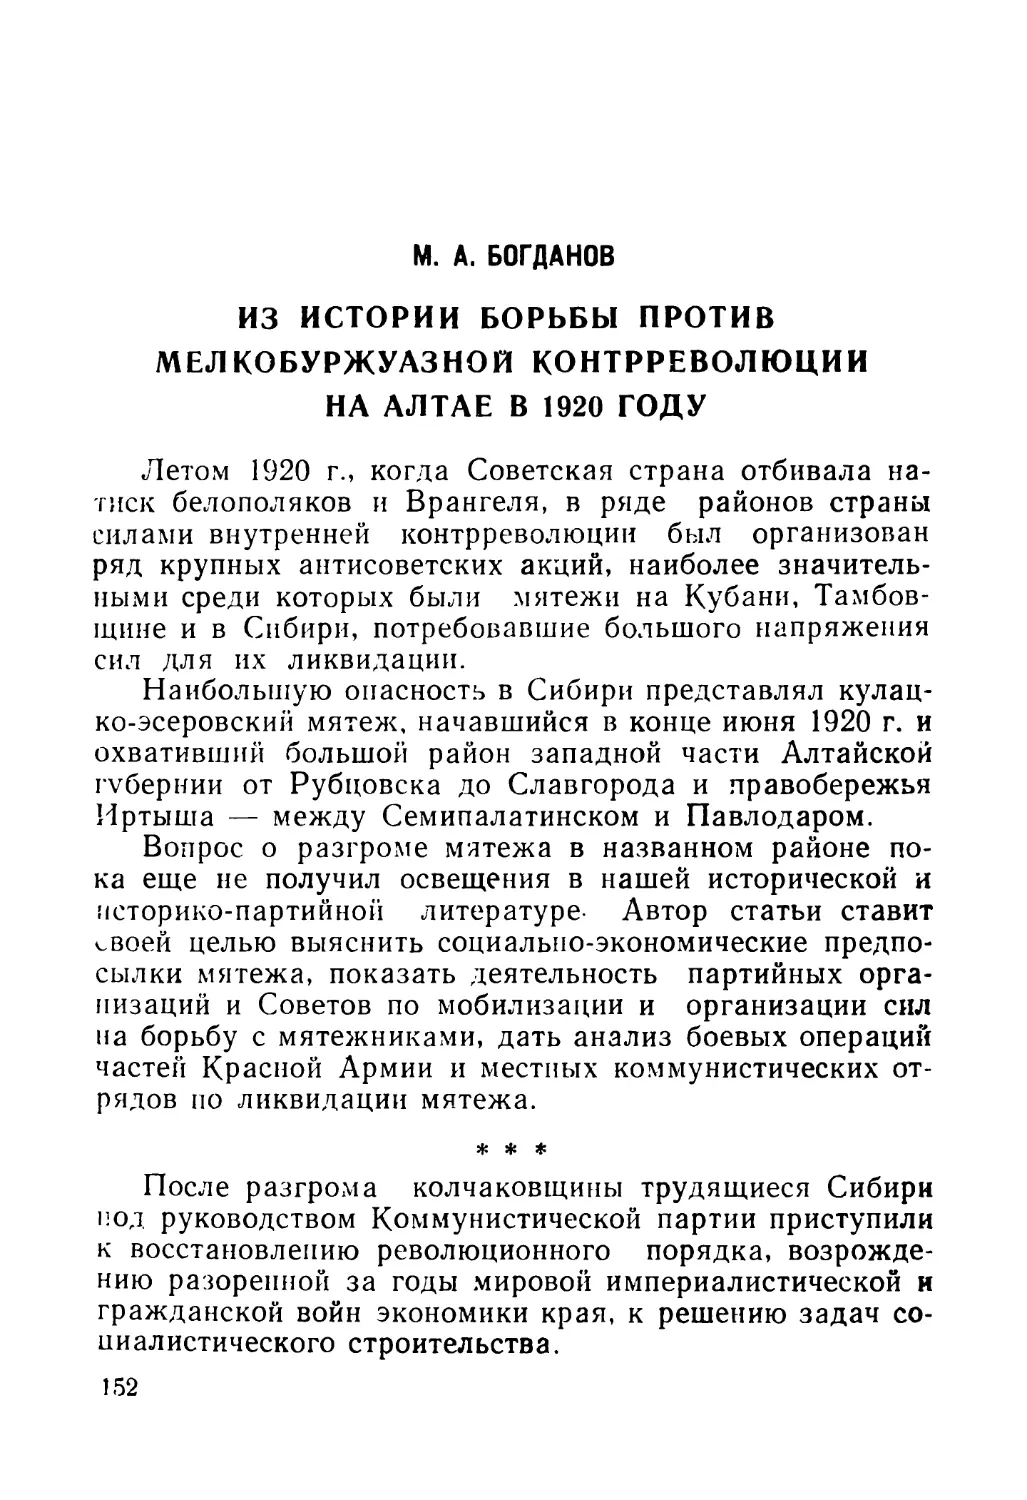 М. А. Богданов. Из истории борьбы против мелкобуржуазной контрреволюции на Алтае в 1920 году